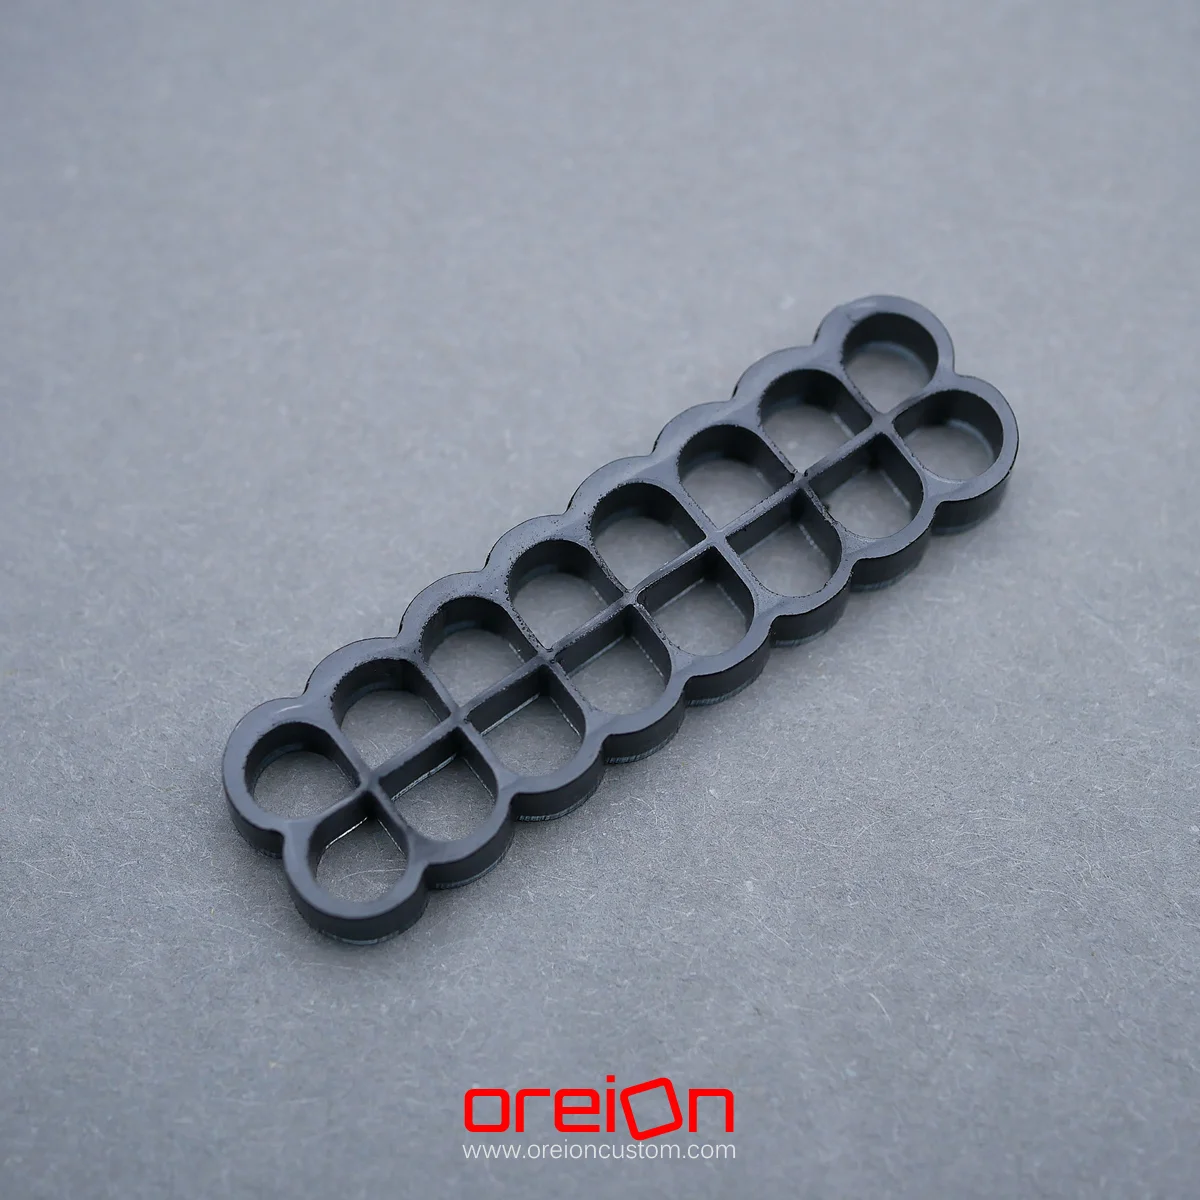 oreioncustom Cable Comb – black Closed 16 pin